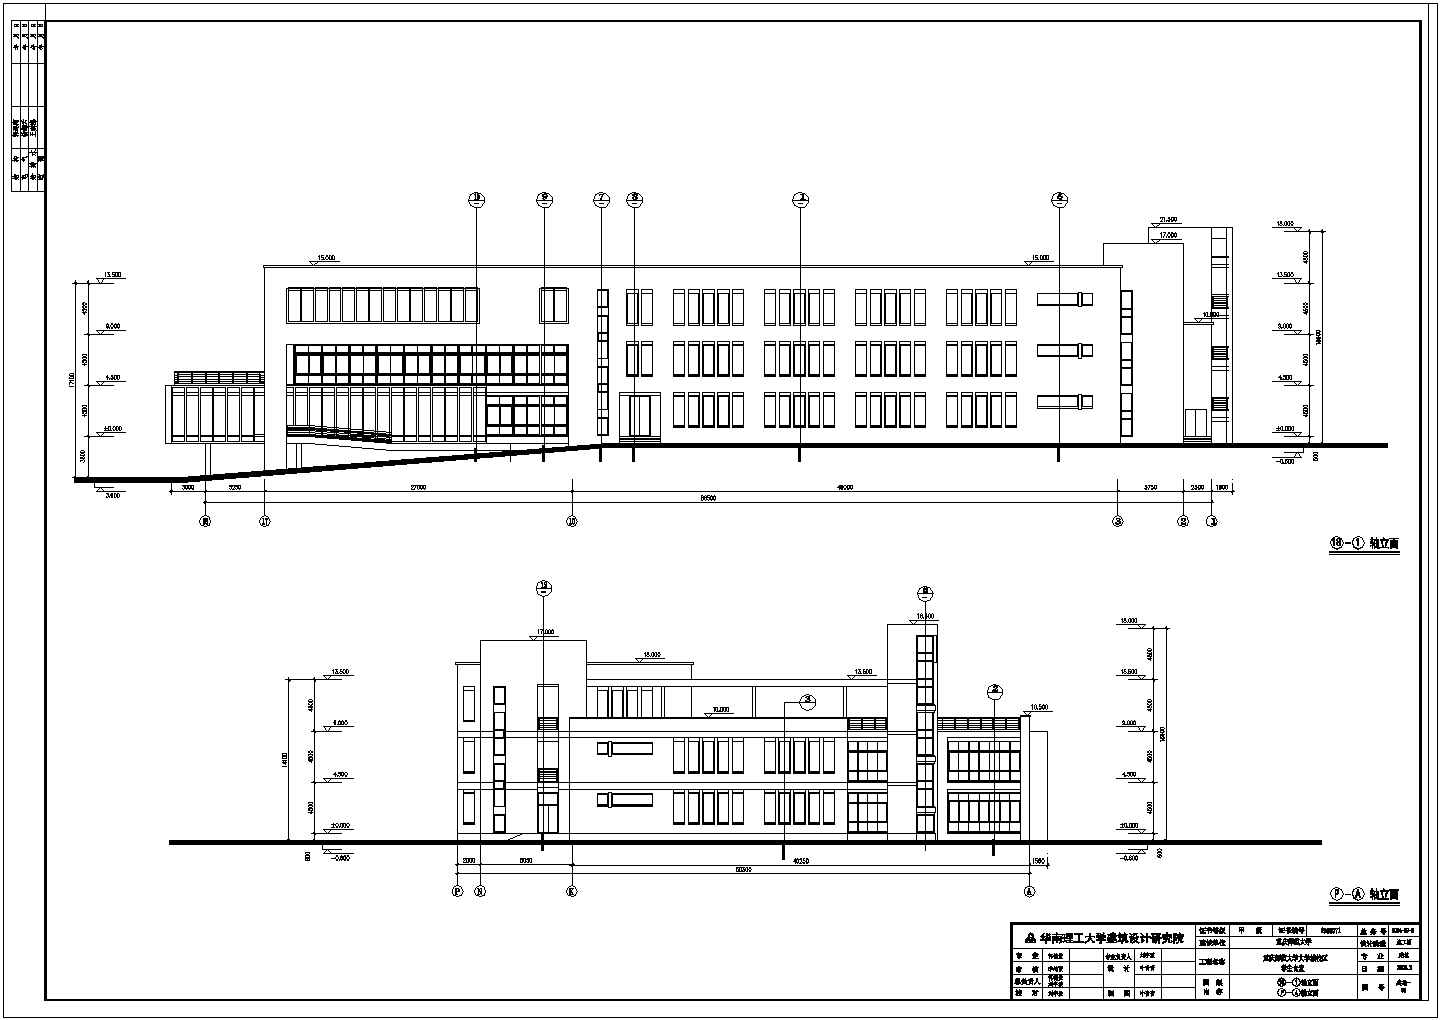 重庆某大学三层框架结构食堂建筑设计施工图纸